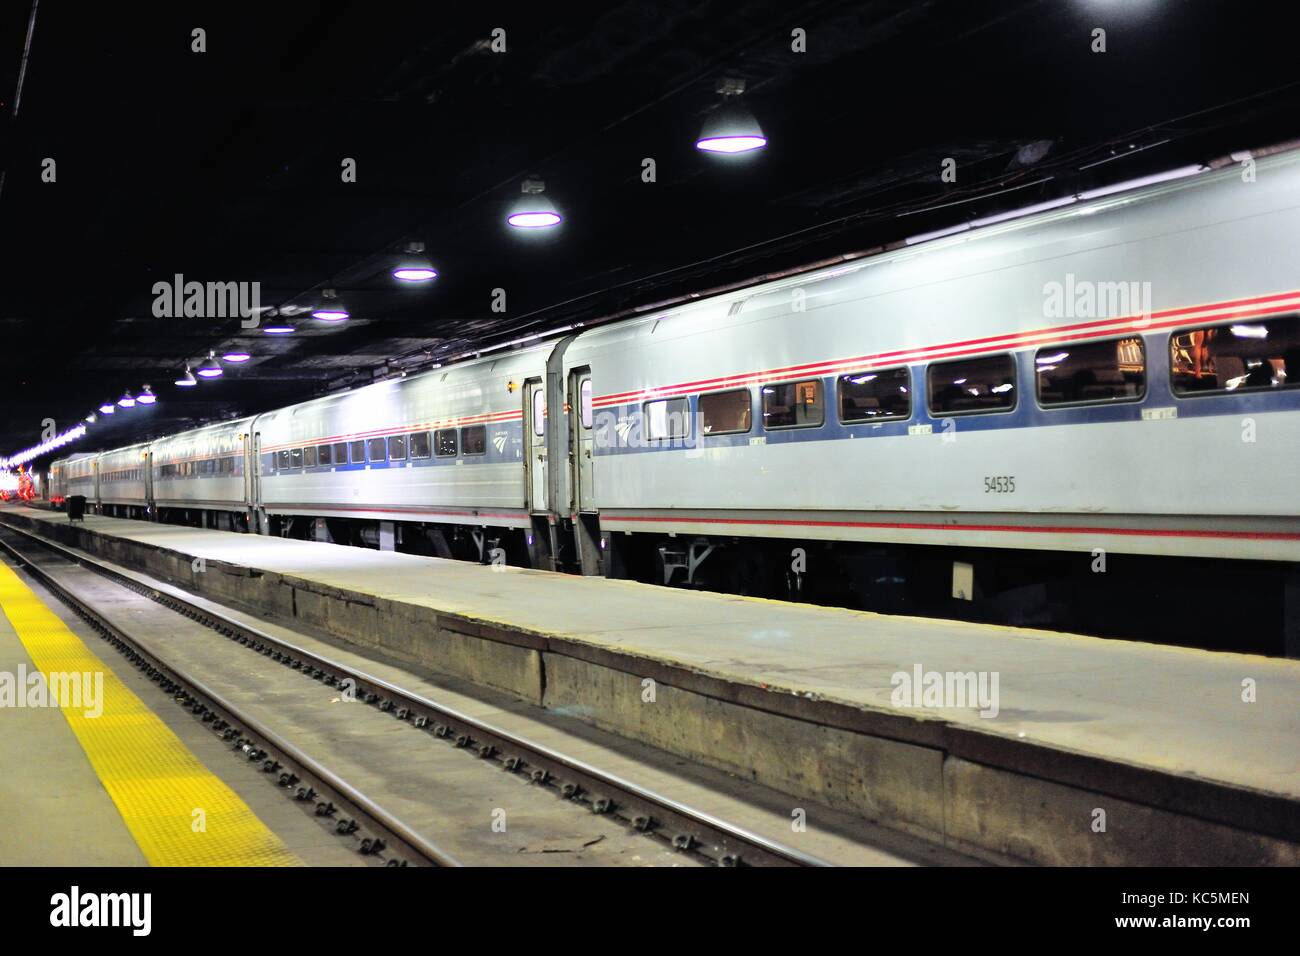 Eine Amtrak passenger train Warten auf Abflug sitzt auf einem Track im Zug in Chicago's Union Station werfen. Chicago, Illinois, USA. Stockfoto